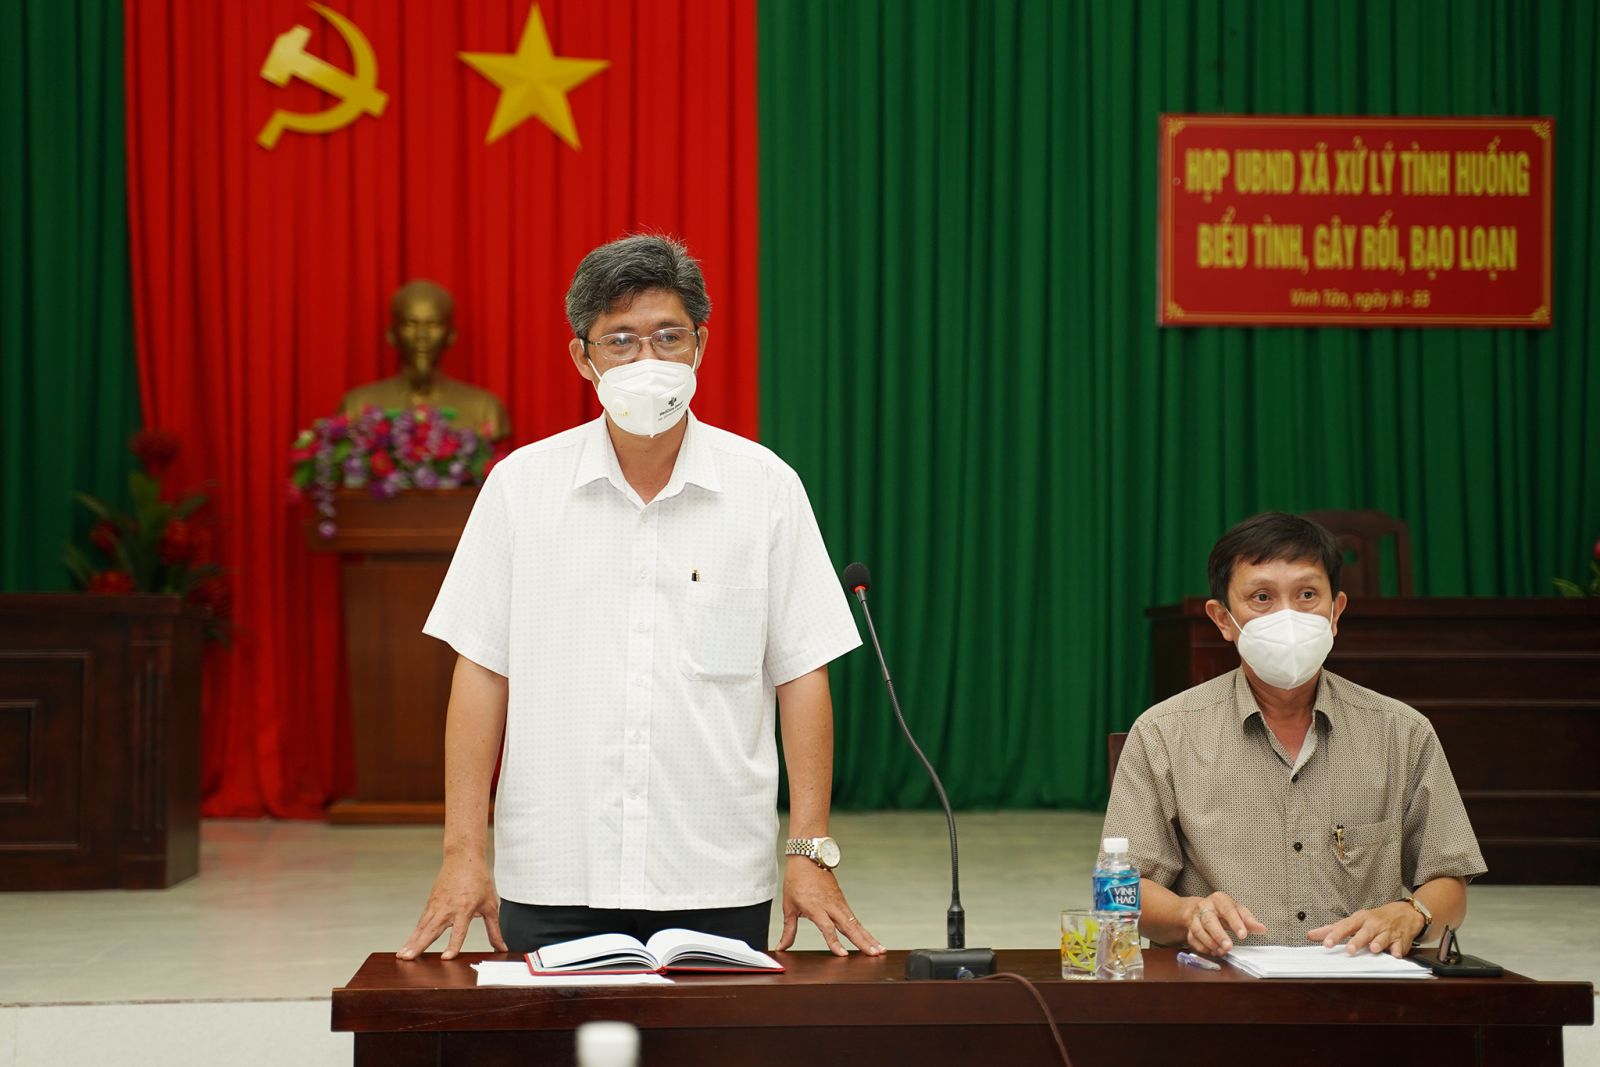 Phó Chủ tịch UBND tỉnh - Nguyễn Minh (bên trái) kiểm tra công tác phòng, chống dịch tại huyện Tuy Phong.